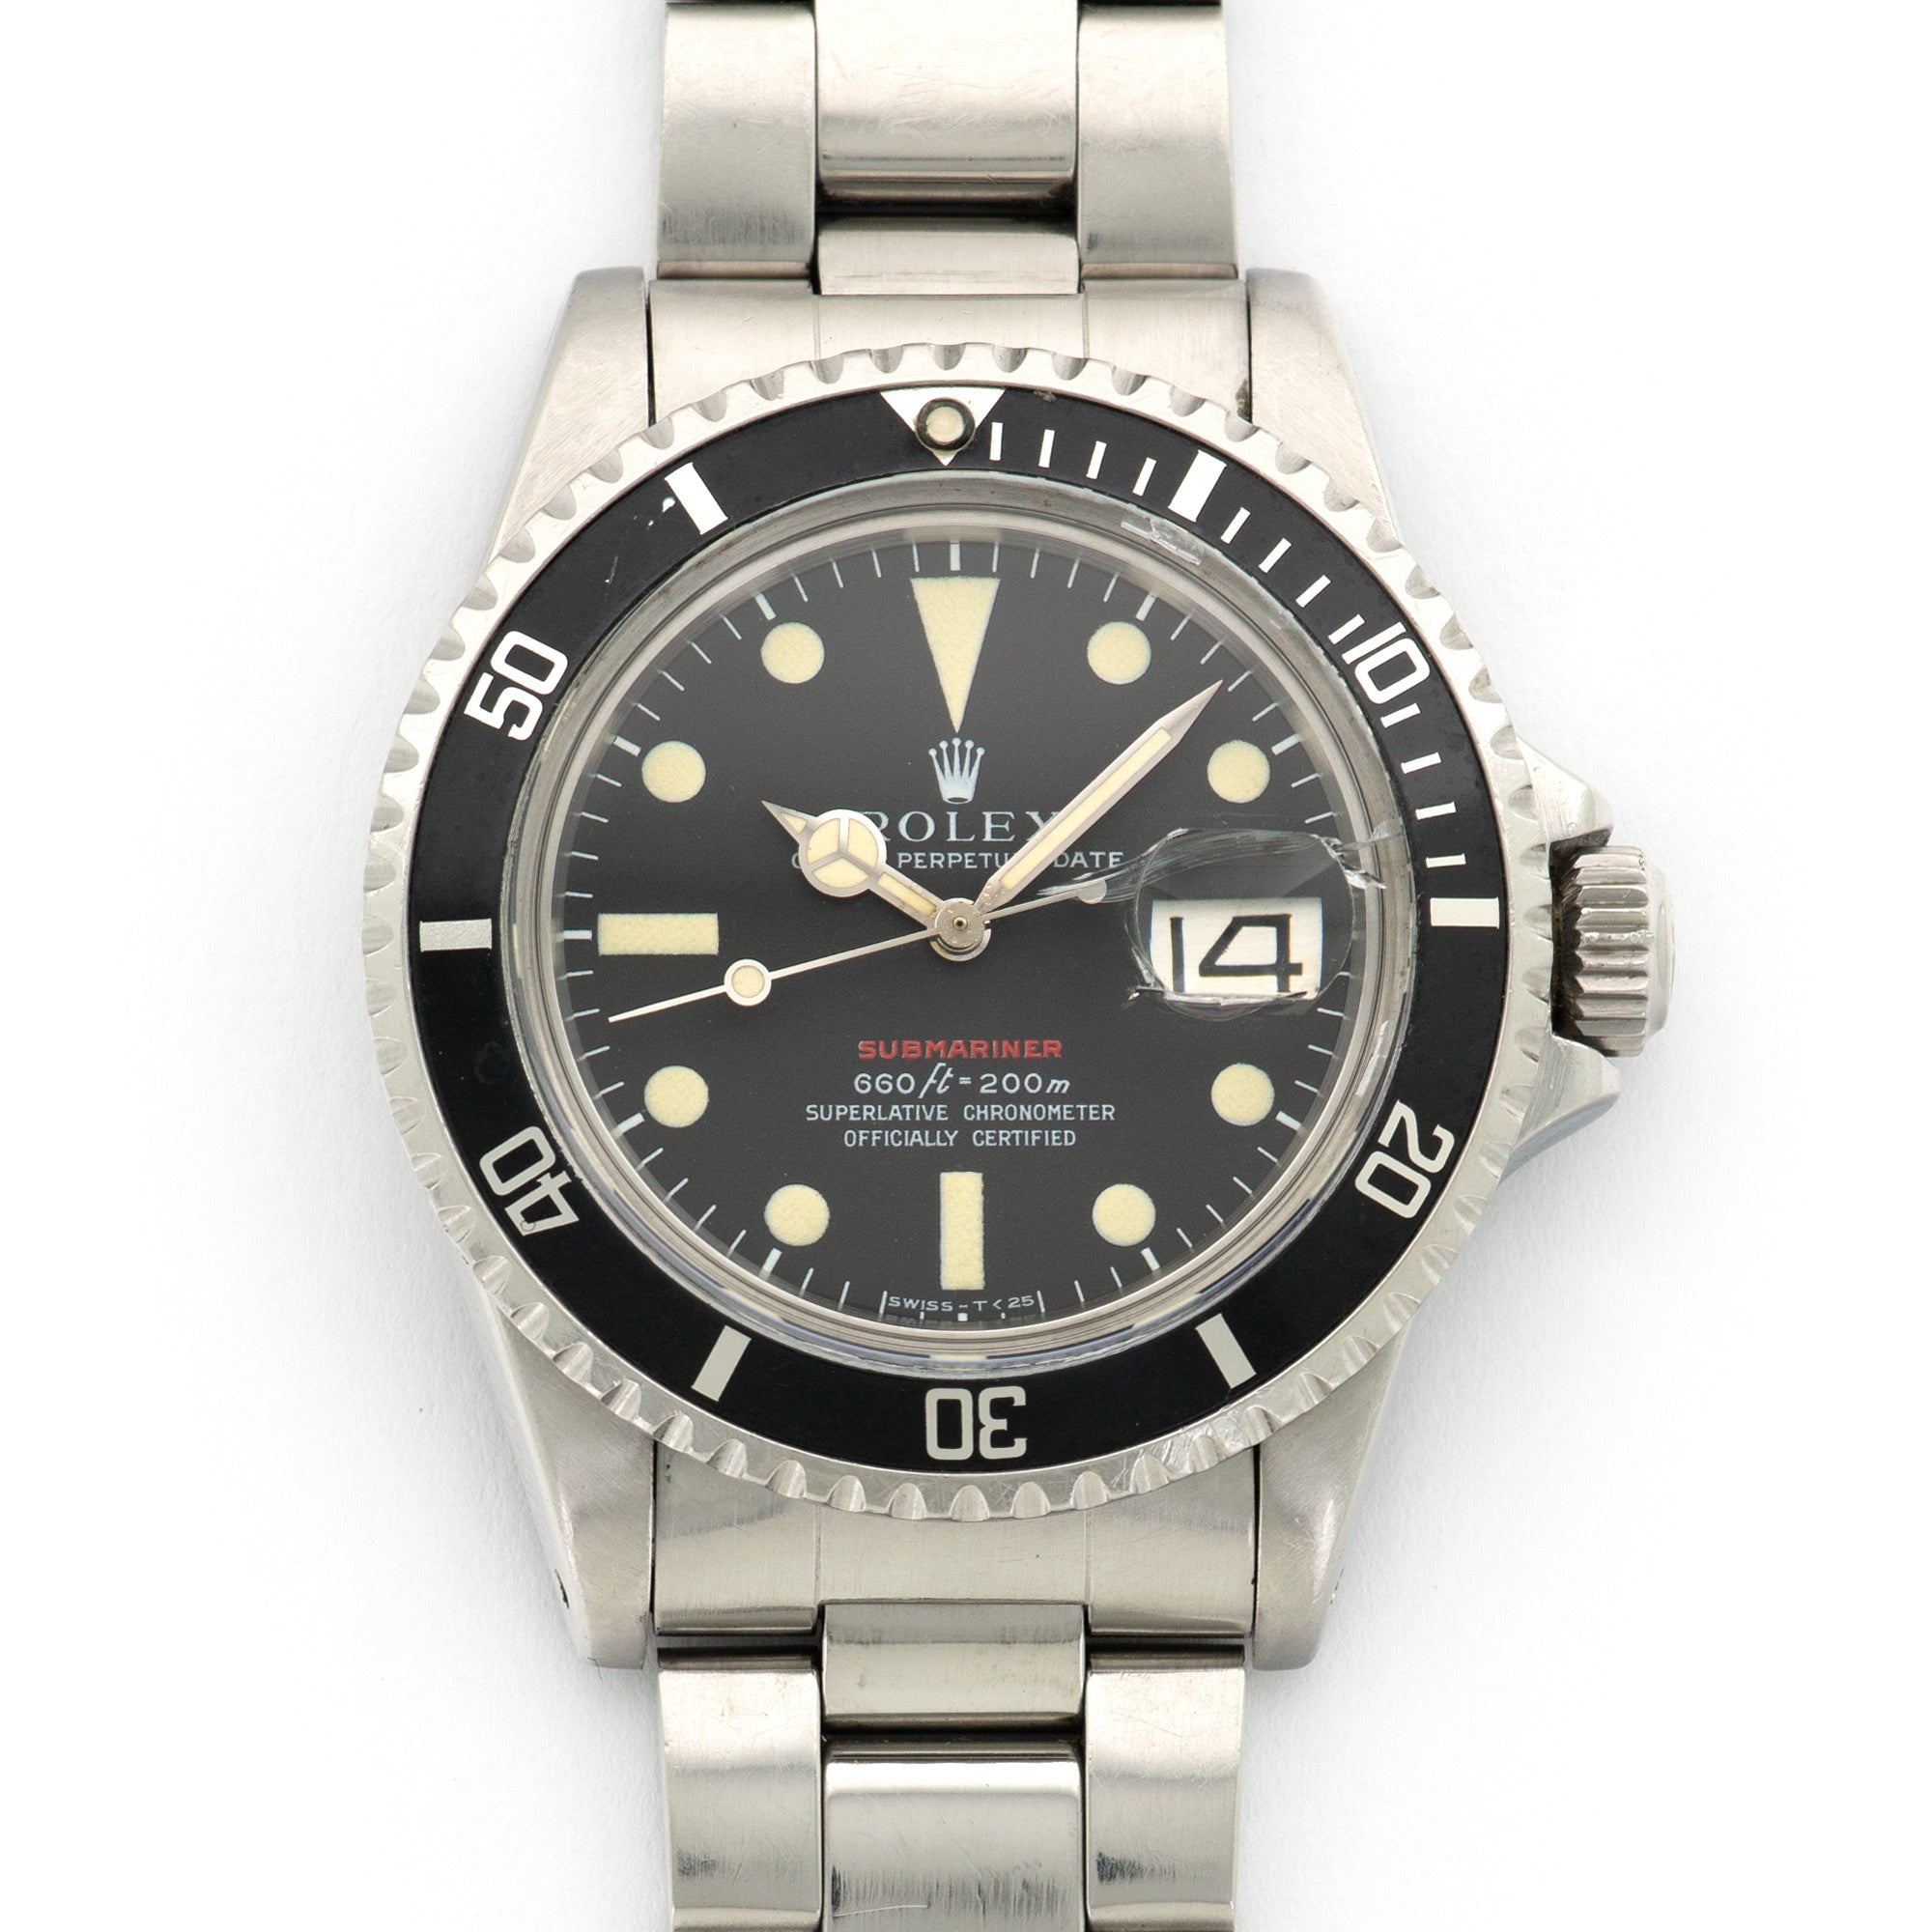 Rolex - Rolex Red Submariner Watch Ref. 1680 - The Keystone Watches